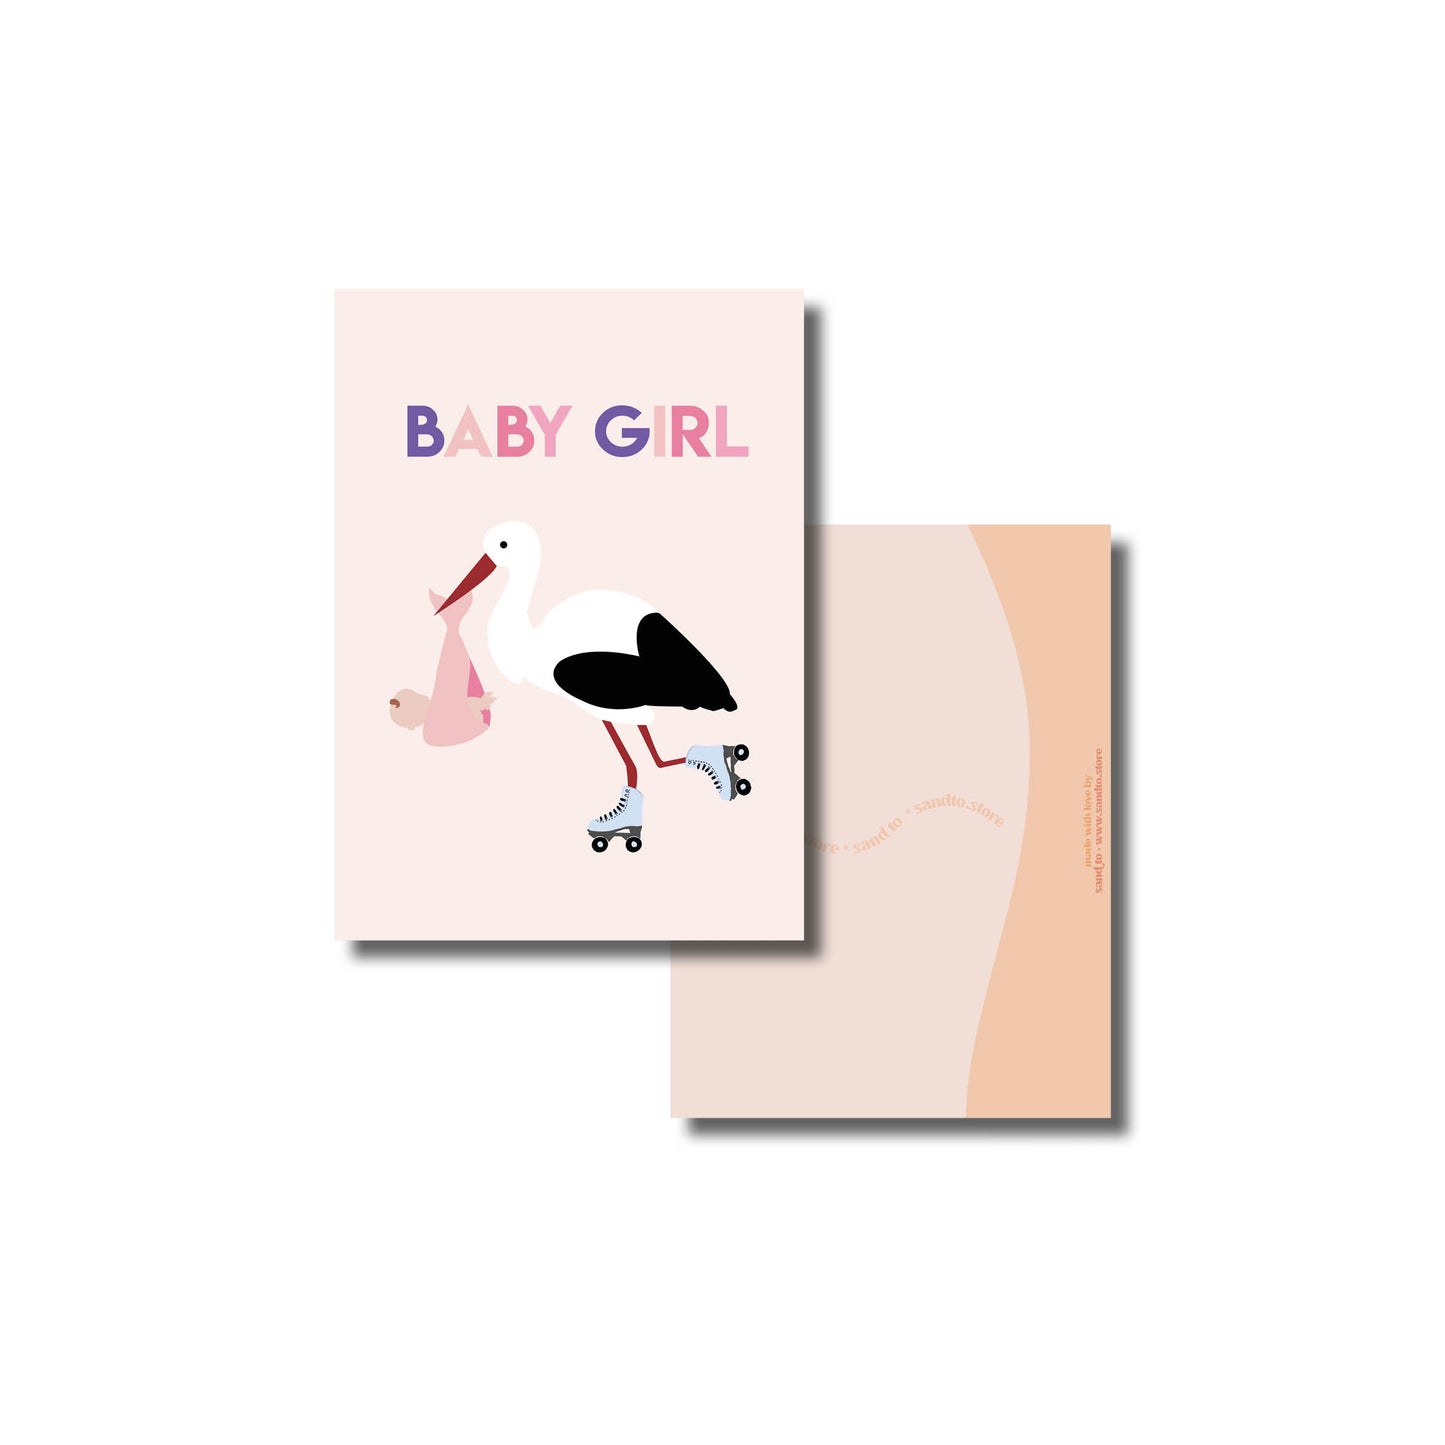 Baby girl kaart